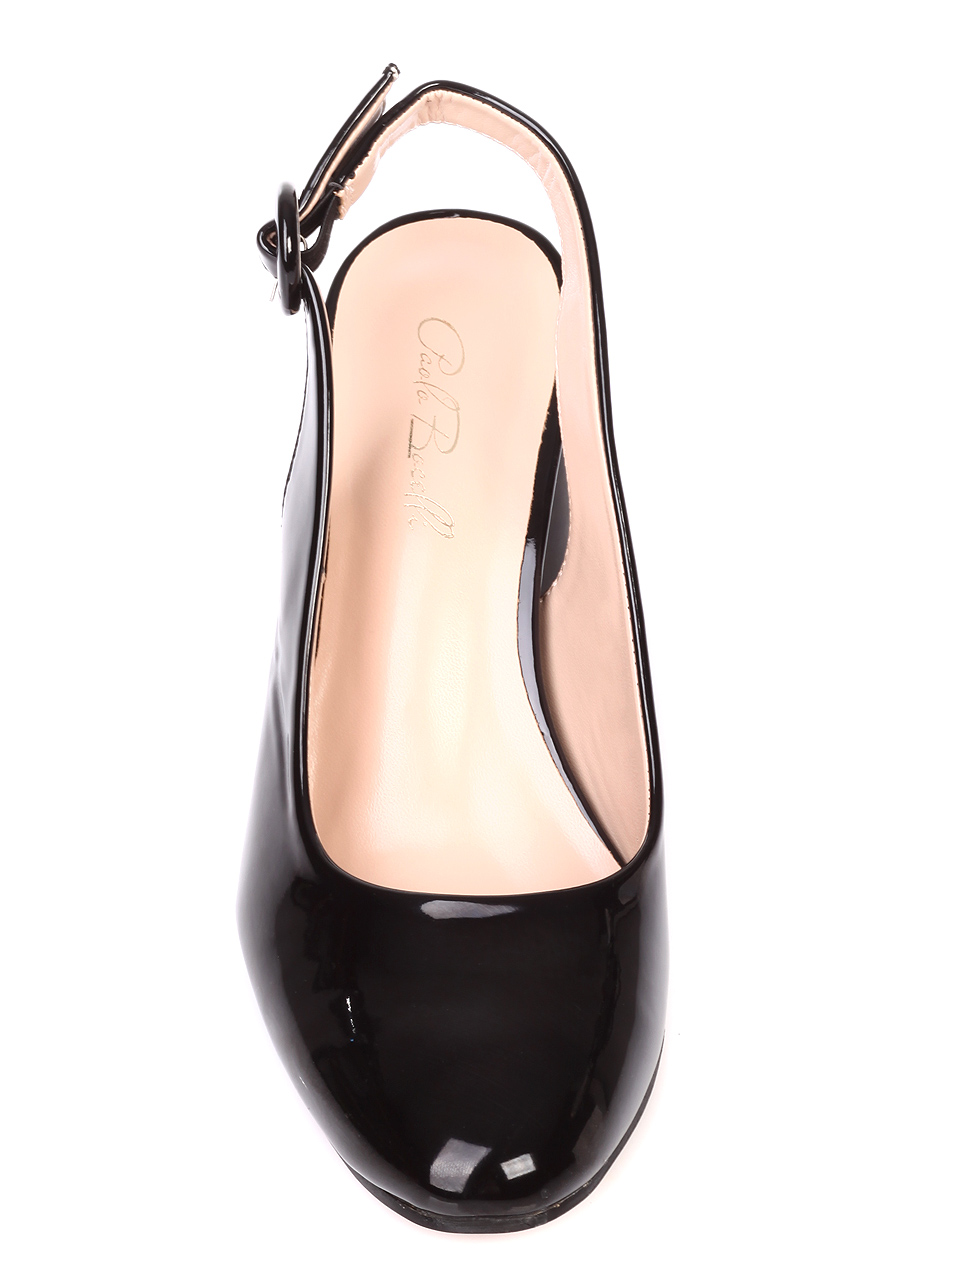 Елегантни дамски обувки на ток от лак 3W-19098 black